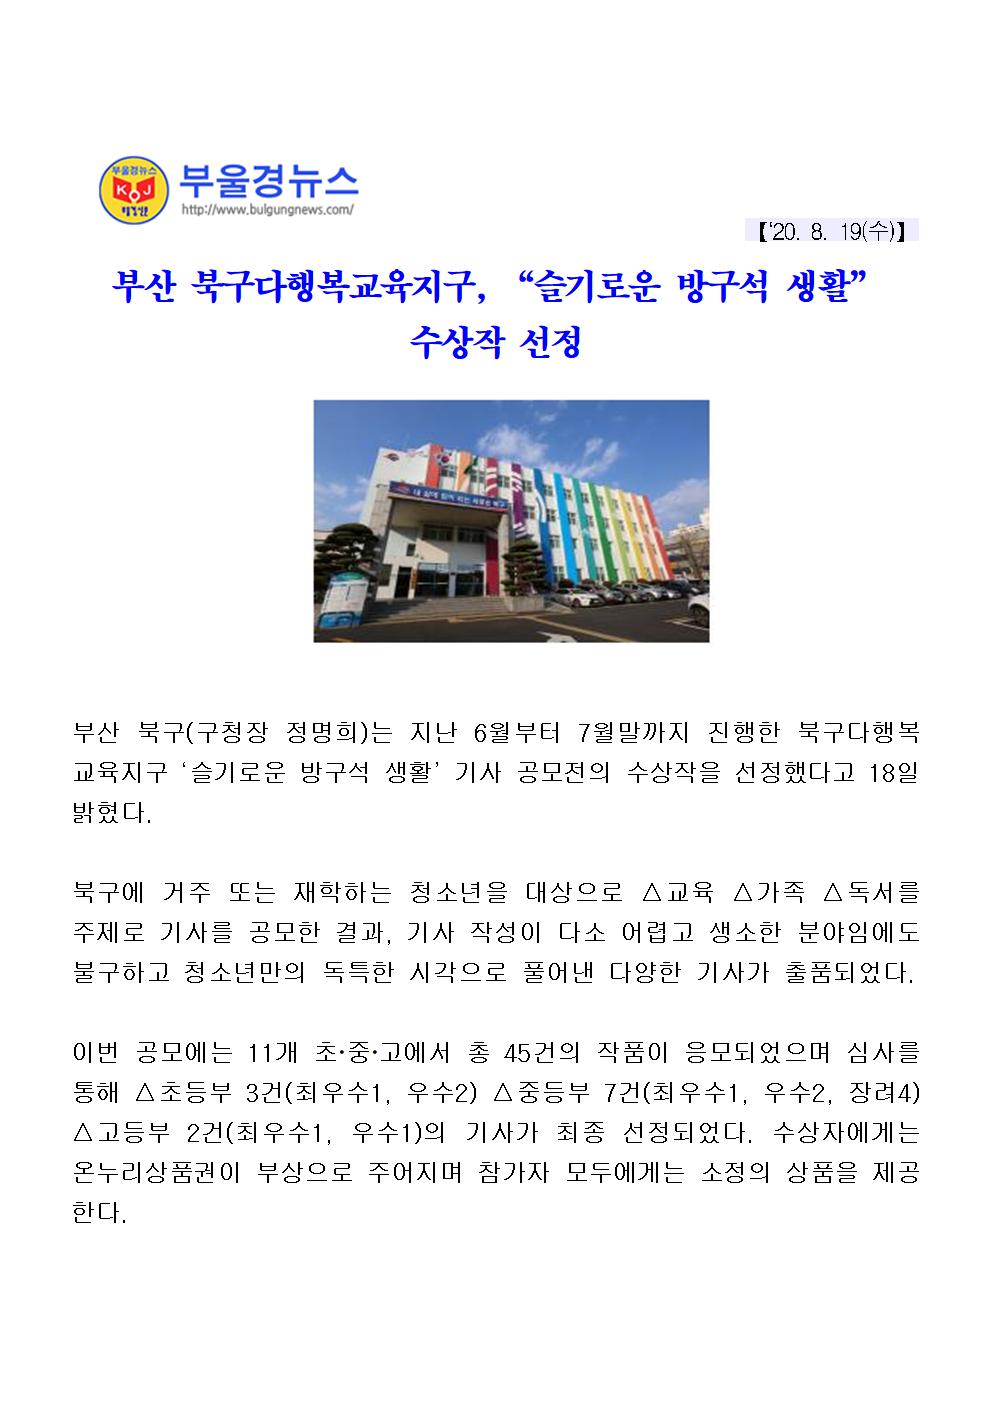 (200819) 부산 북구다행복교육지구,슬기로운 방구석 생활 수상작 선정(3-1-9)